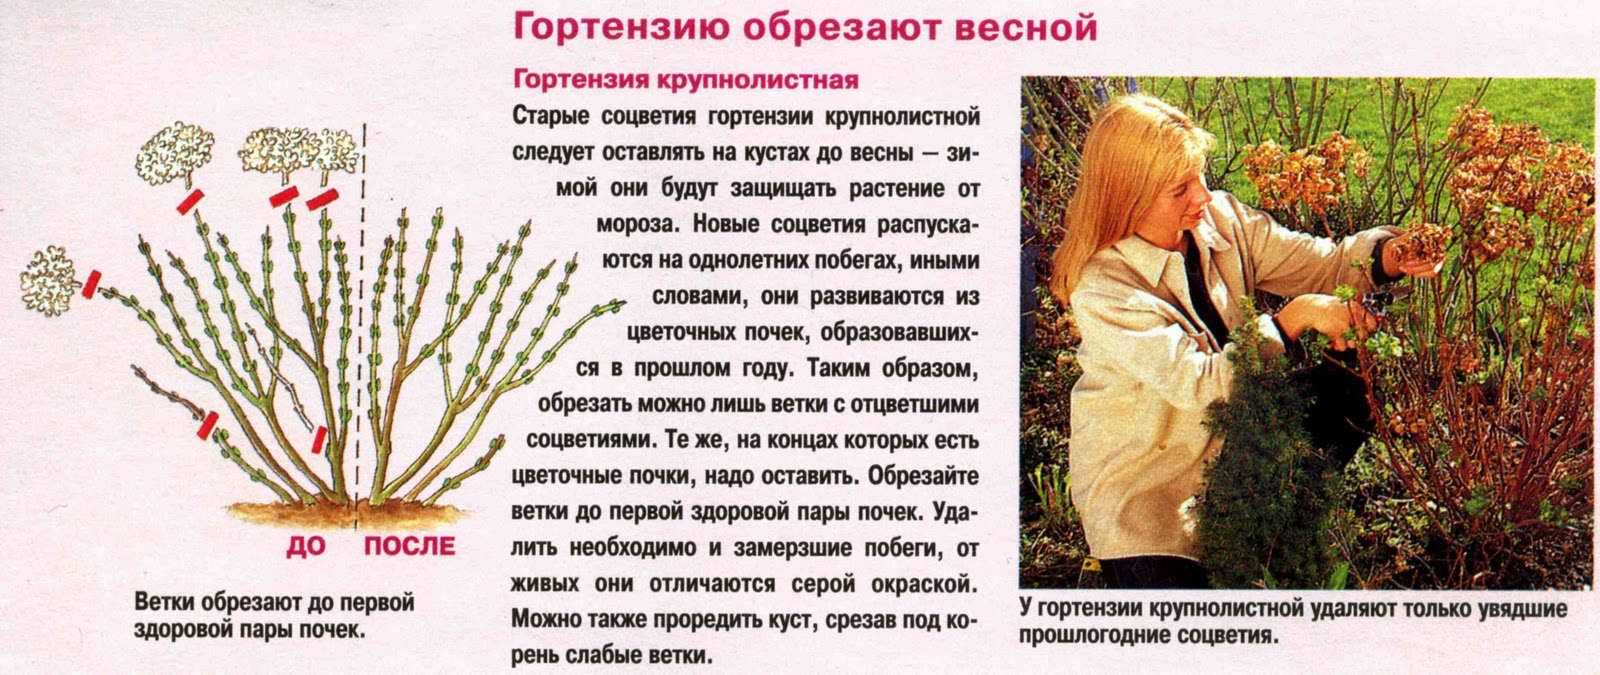 Гортензия метельчатая: фото, описание, размножение, уход и обрезка - sadovnikam.ru